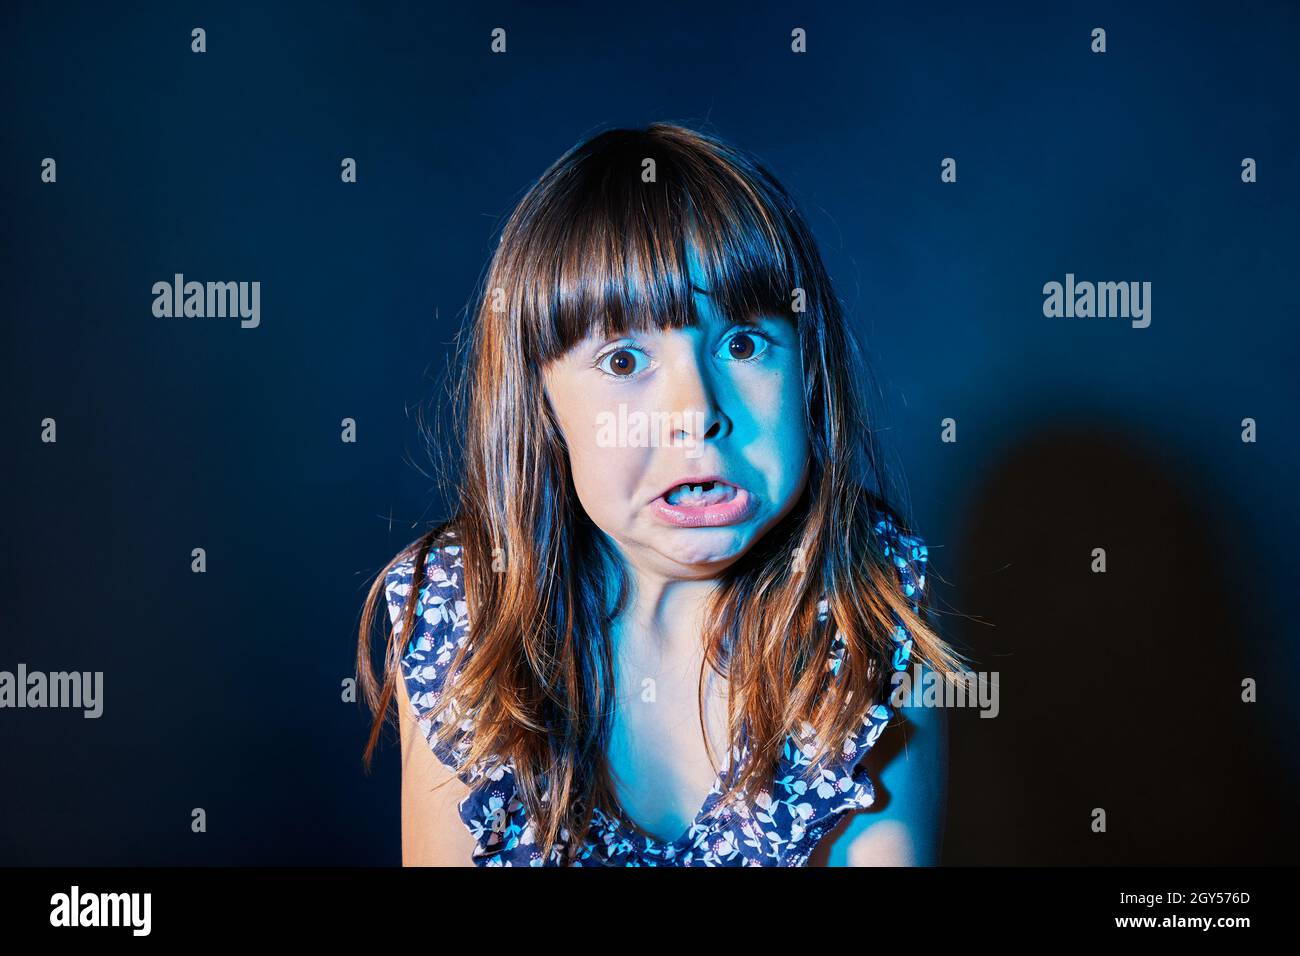 Porträt eines verängstigten Mädchens in einer dunklen Umgebung mit farbigen Lichtern Stockfoto